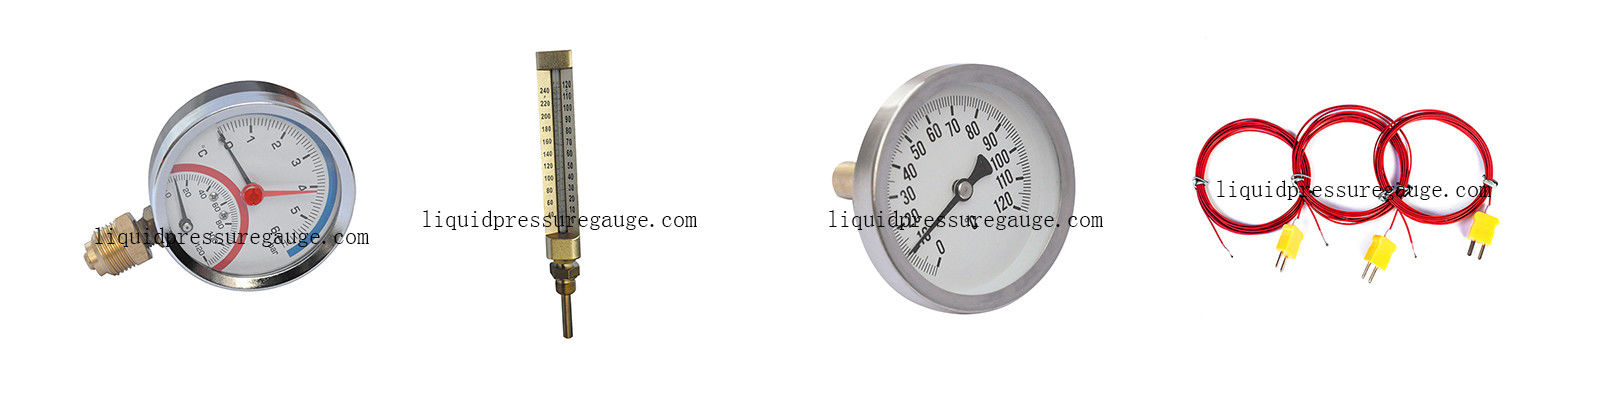 Termômetros e medidores de temperatura